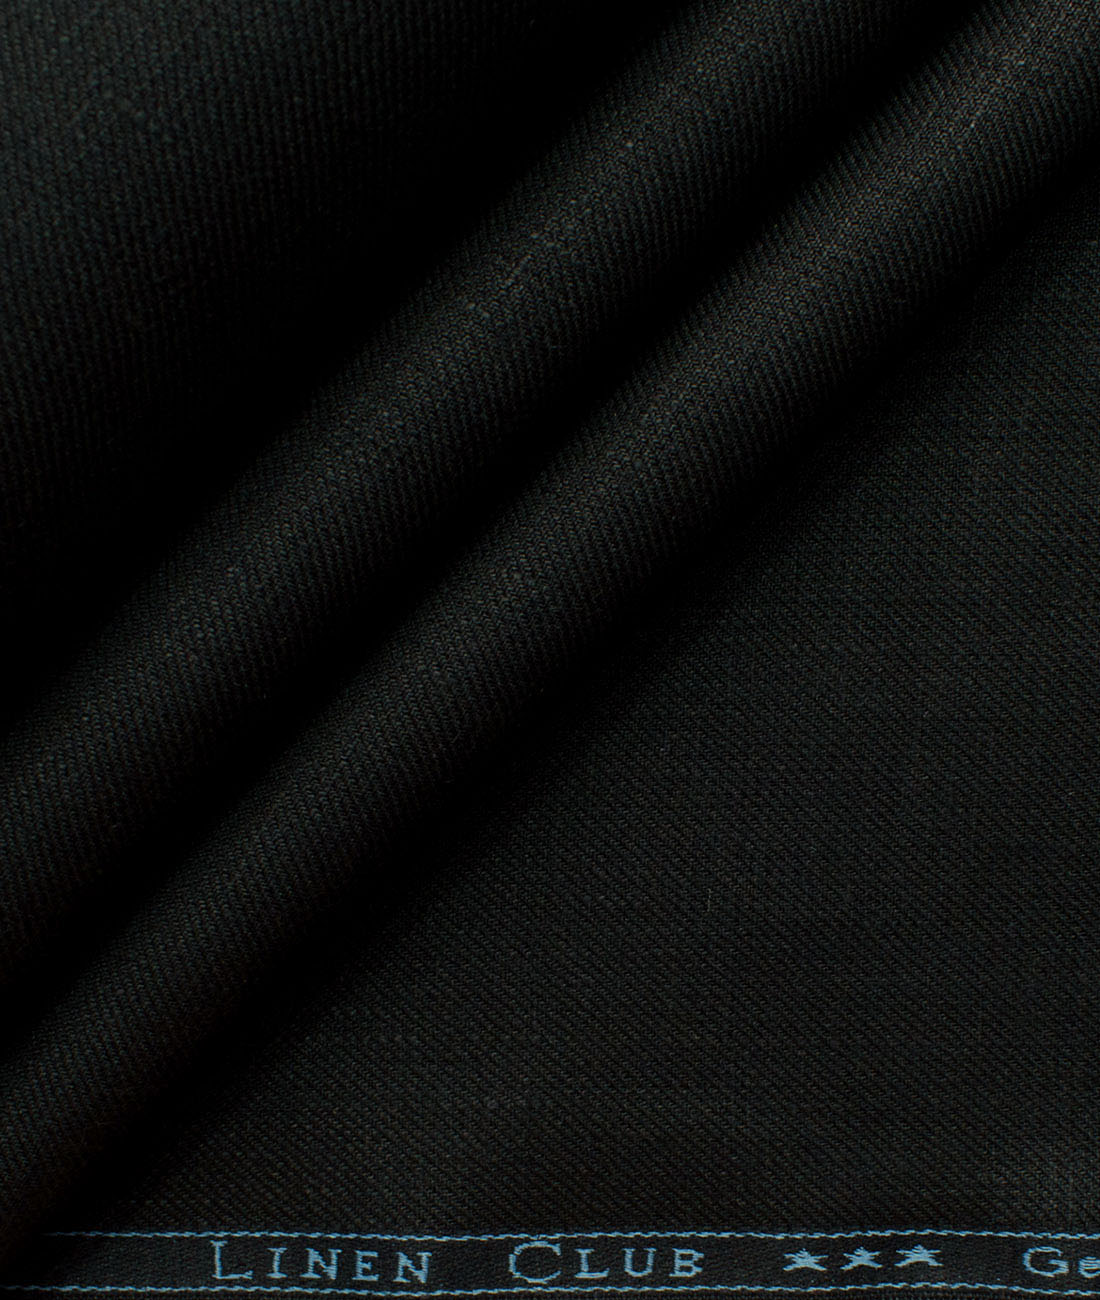 Linen Club Men's 100% Linen 30 LEA Solids 3.75 Meter Unstitched Suiting Fabric (Jet Black)